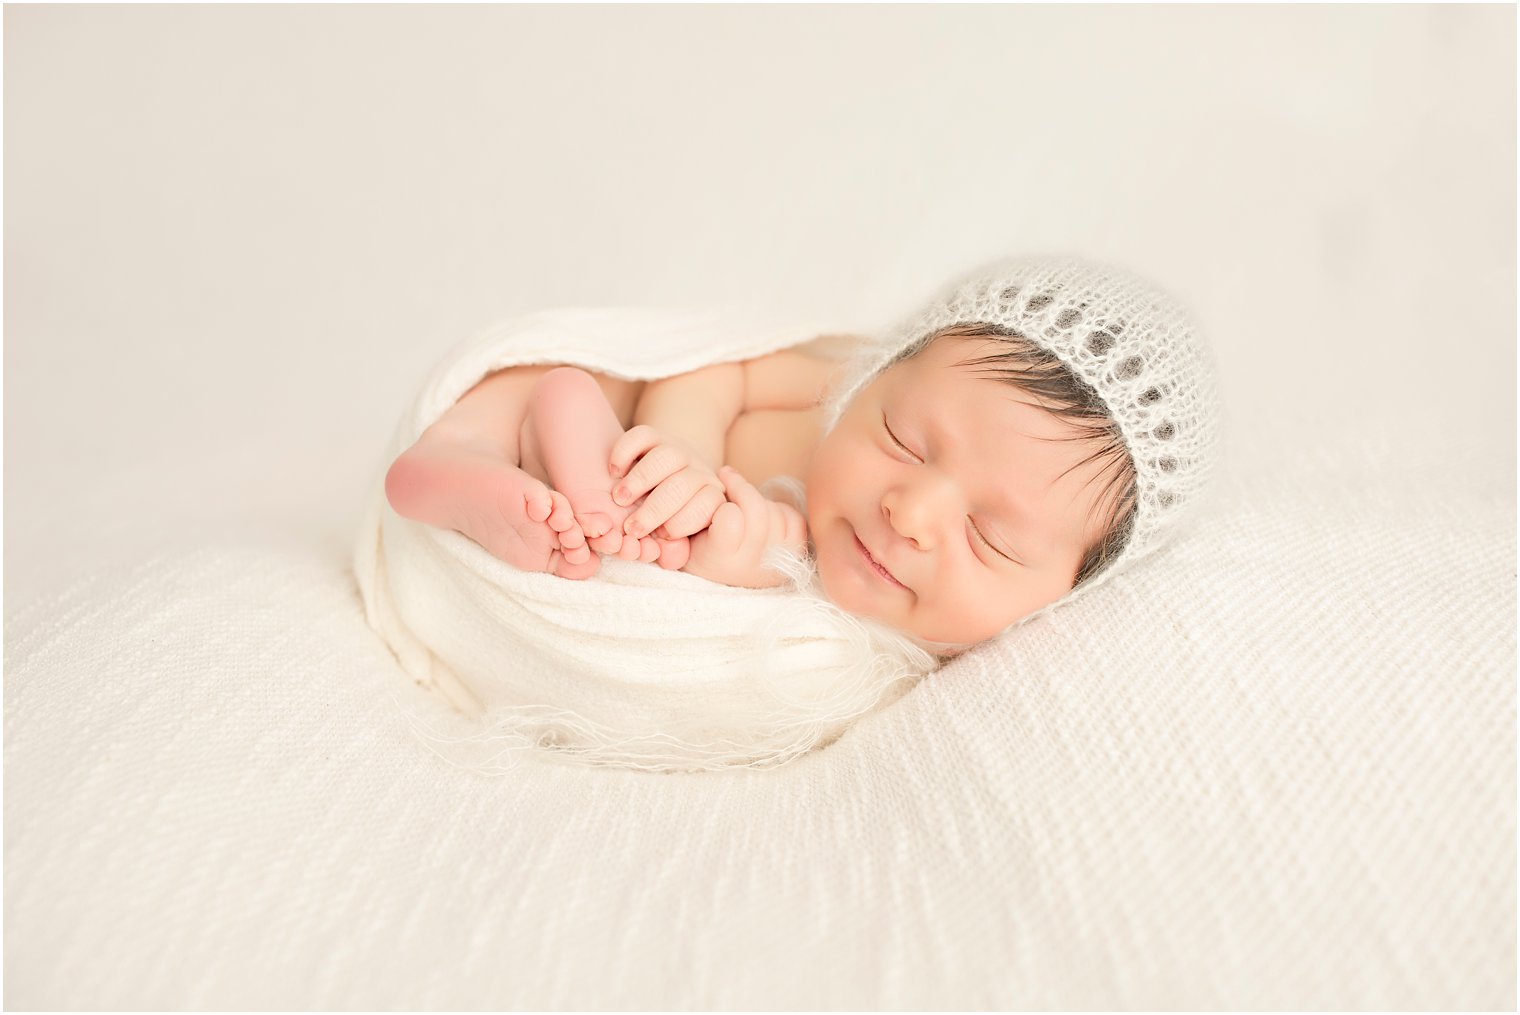 Newborn boy with cream hat